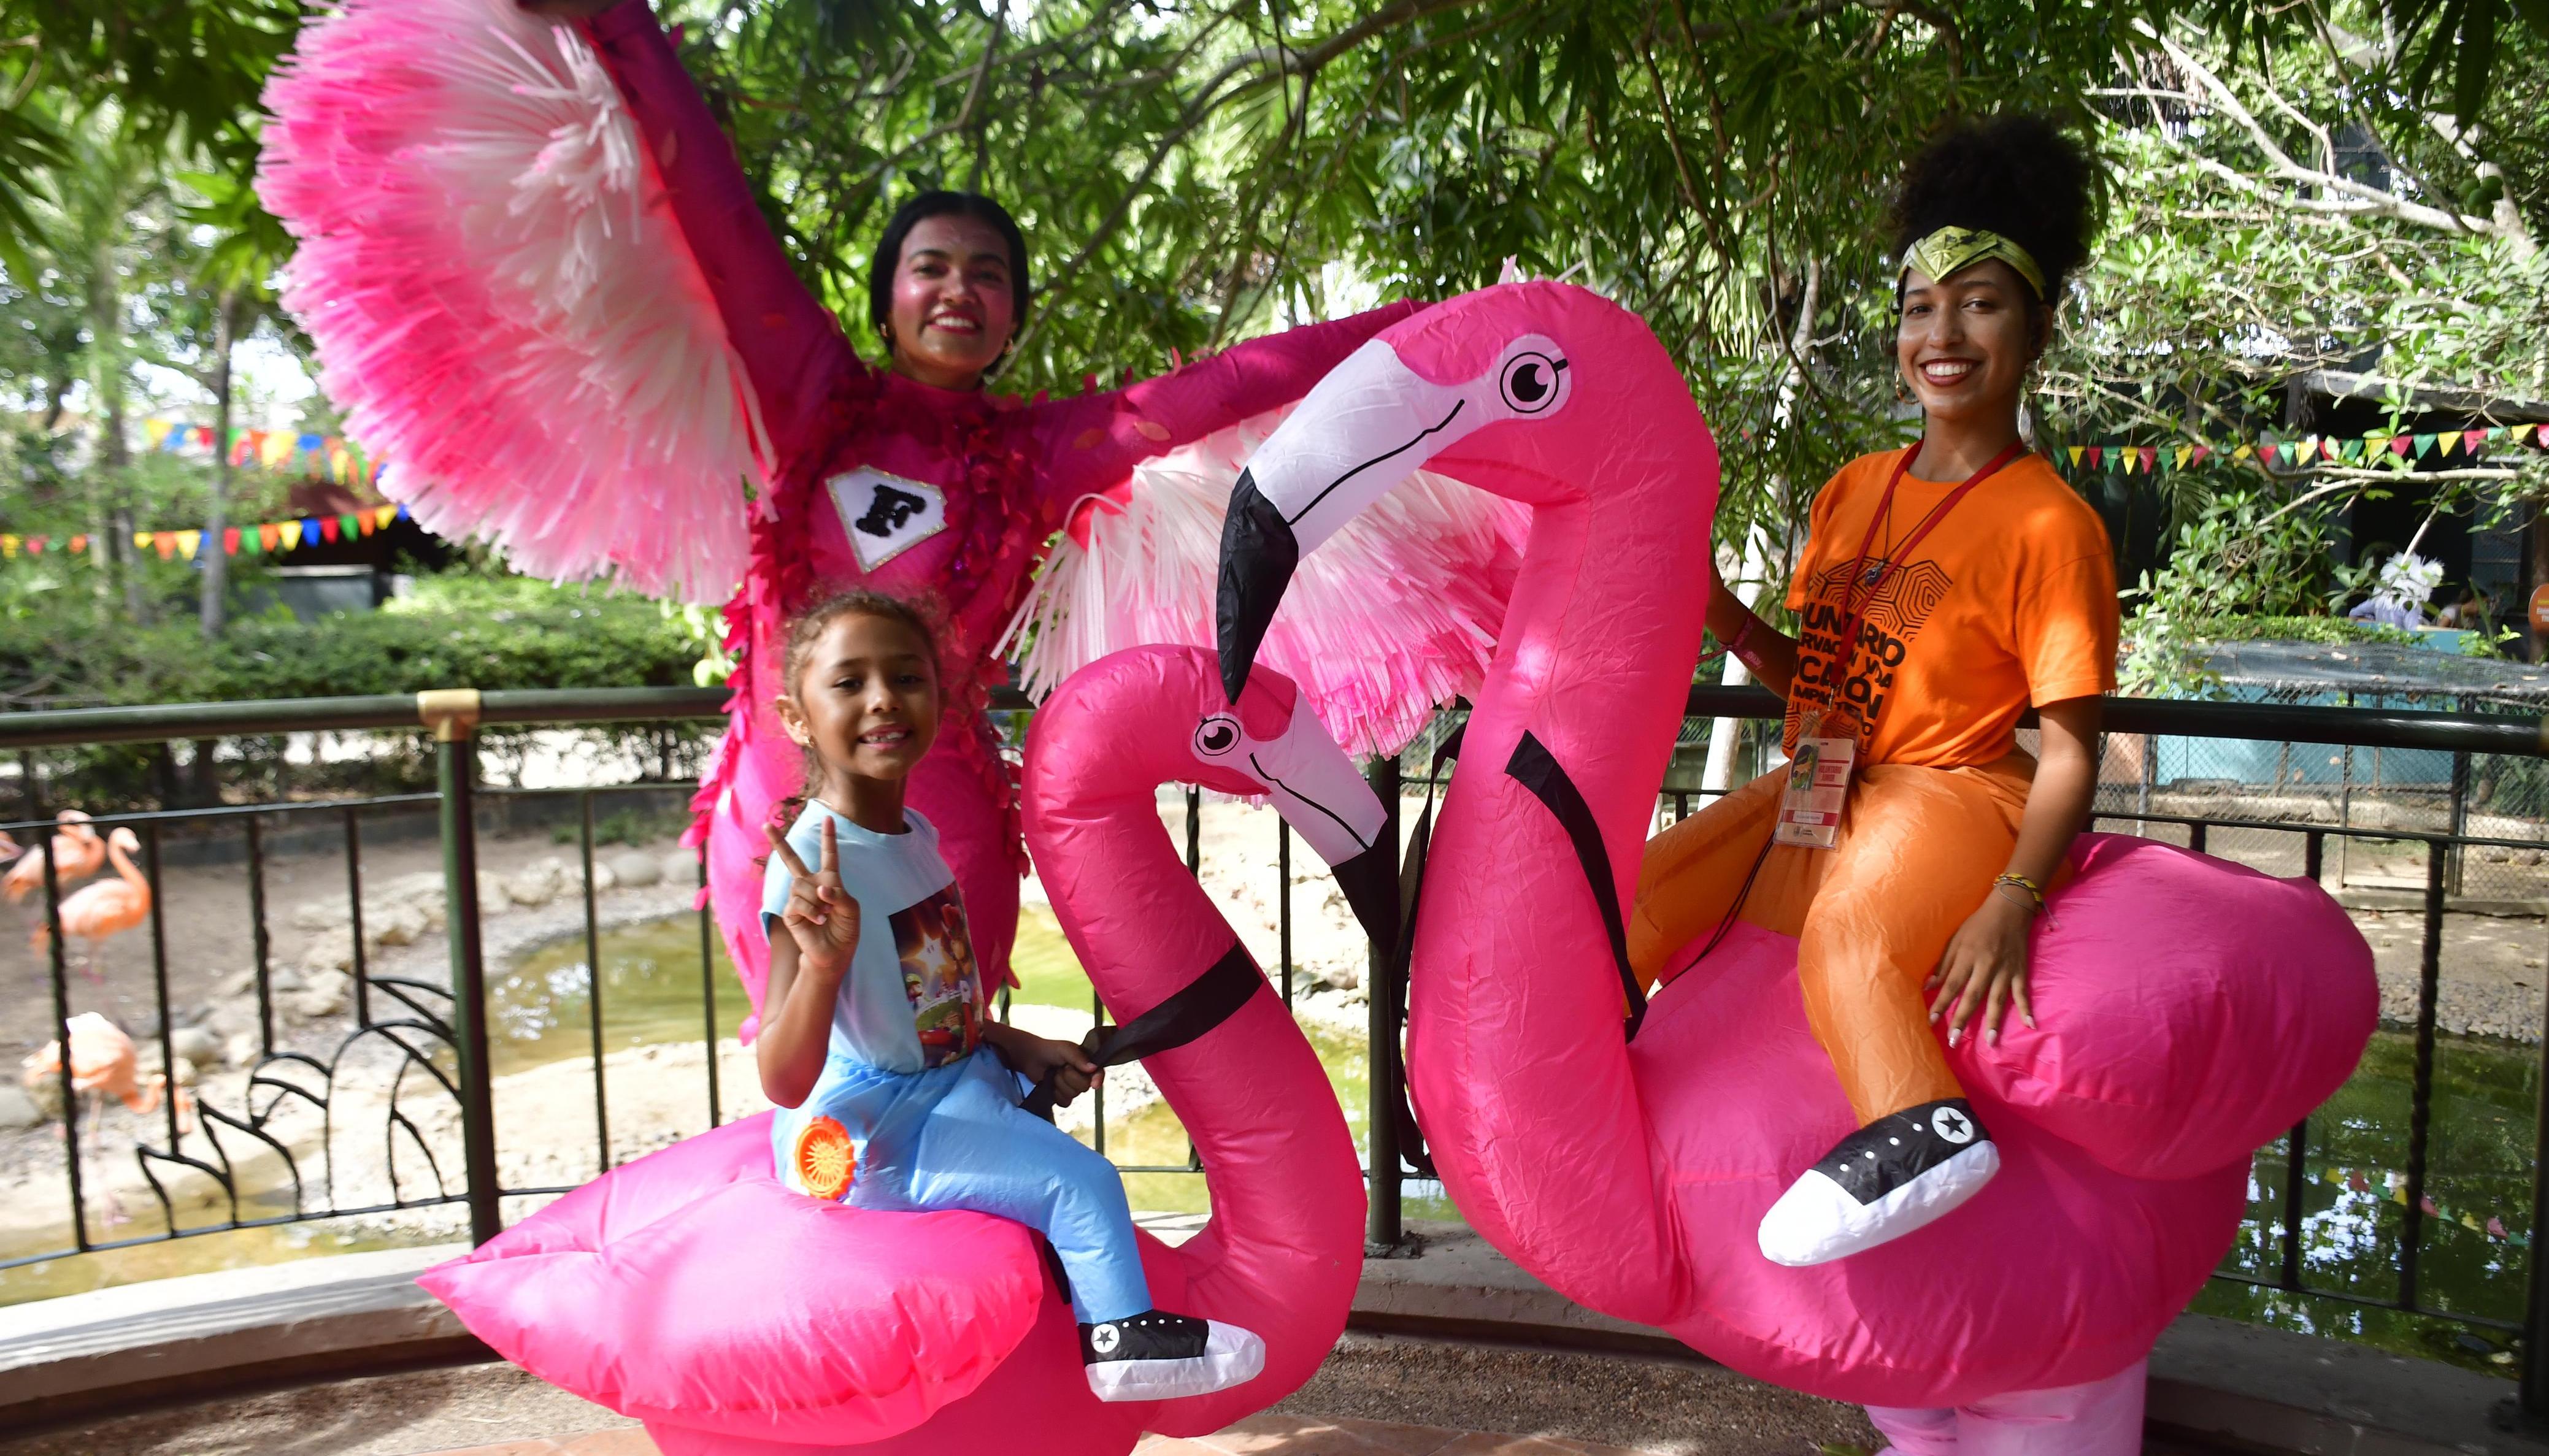 Zoológico de Barranquilla celebrará el Día del Niño.